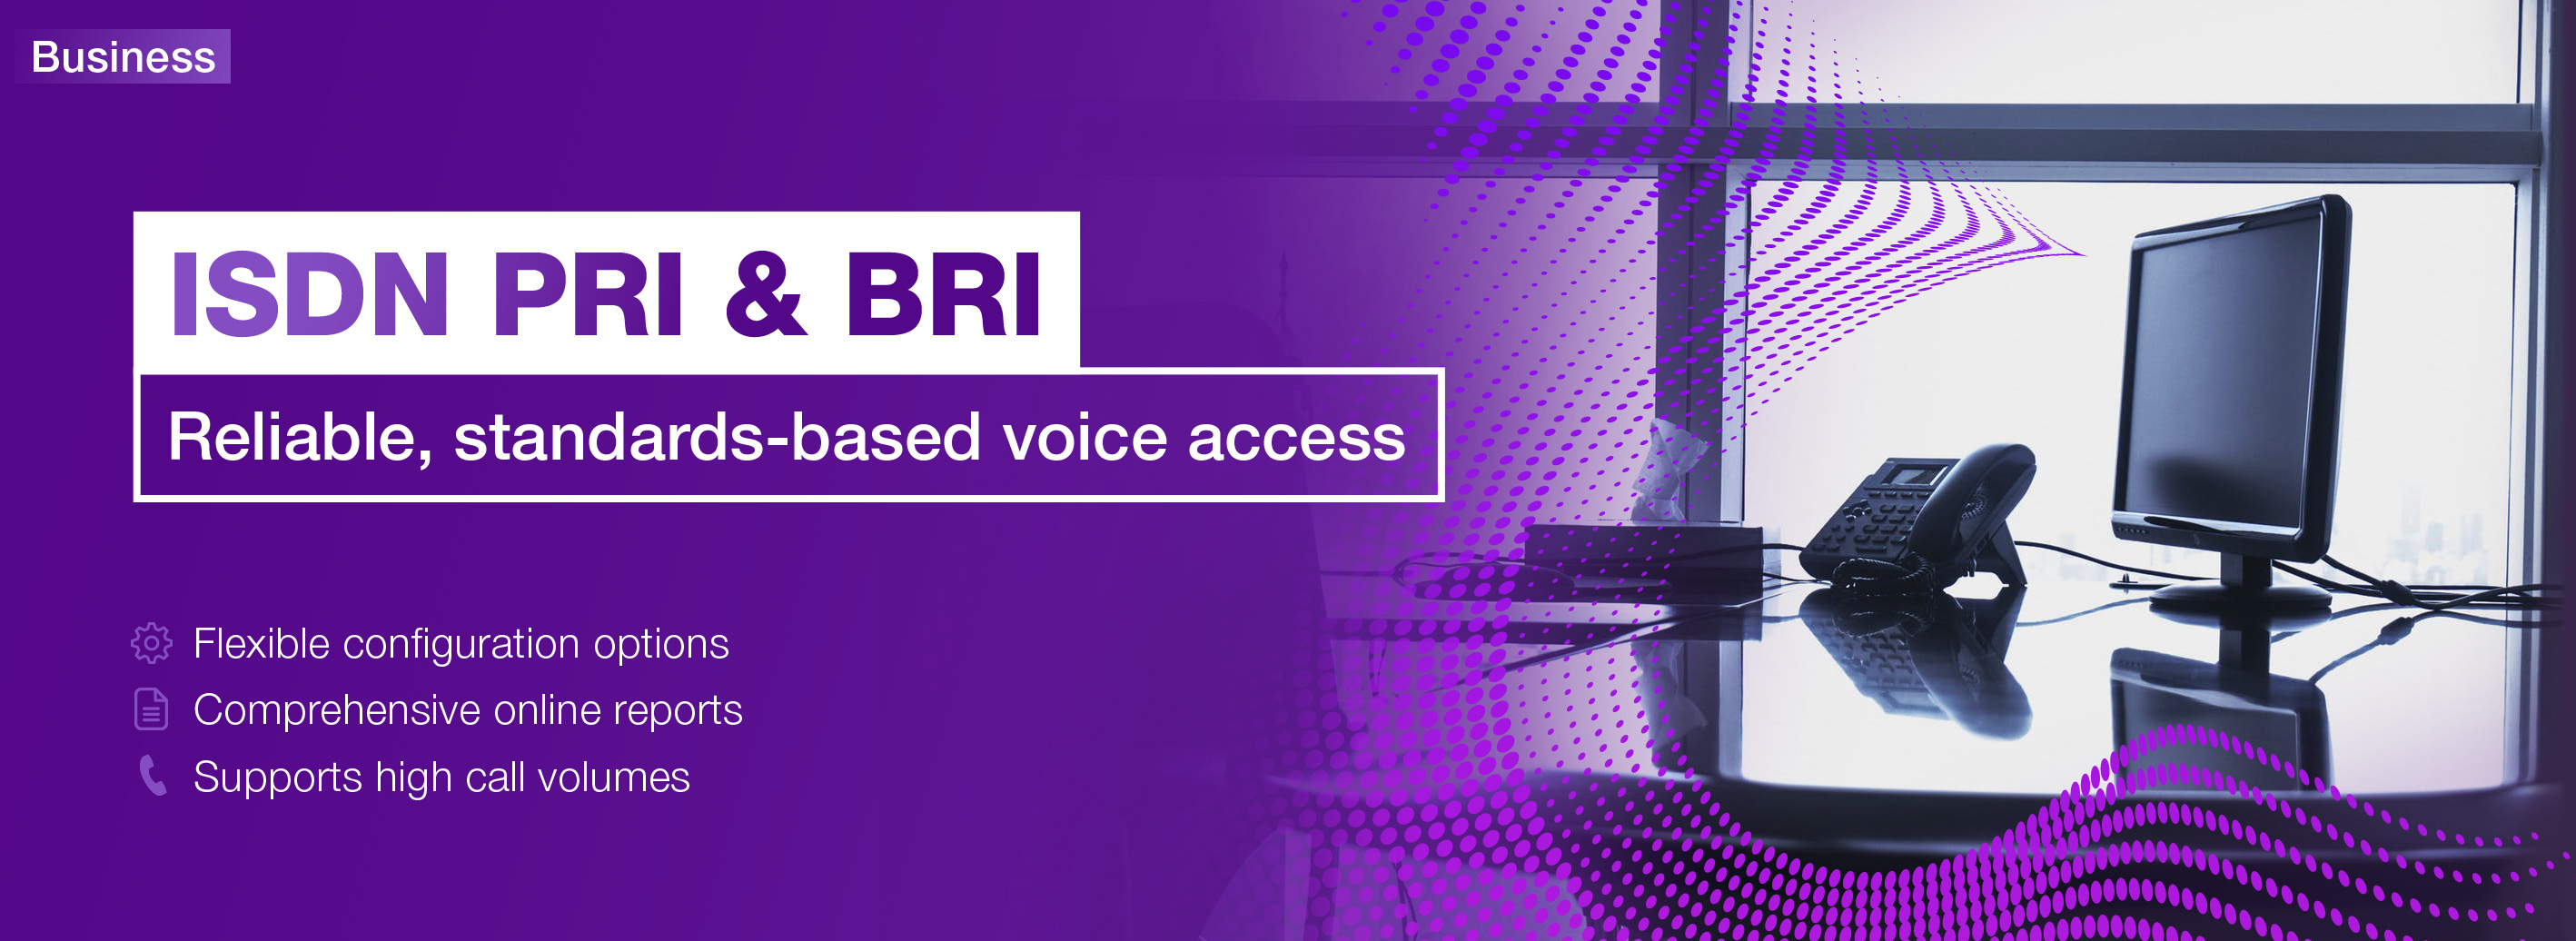 ISDN PRI & BRI - Reliable, standard-based voice access